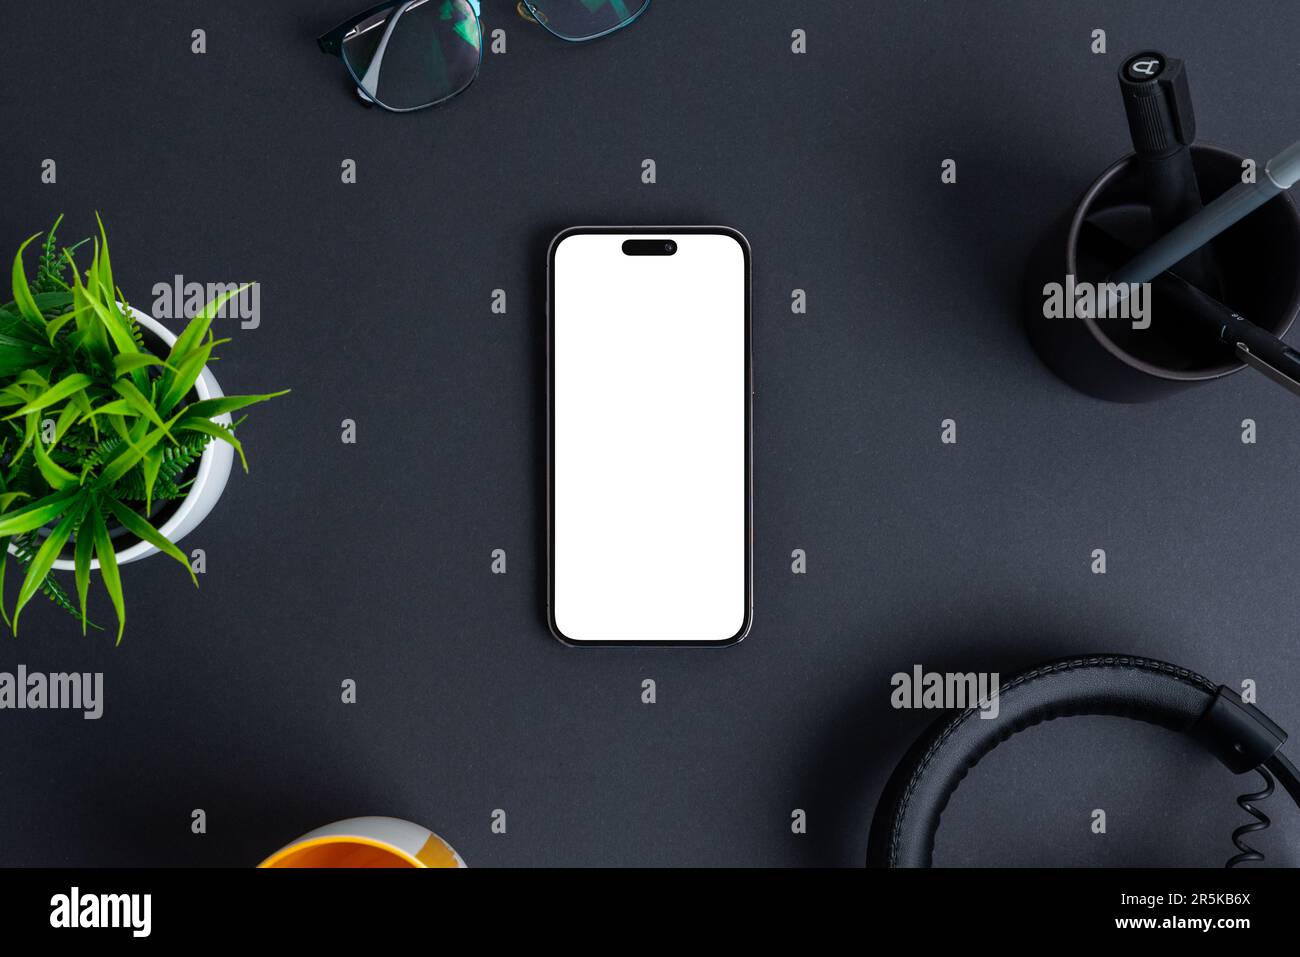 Telefonmodell auf schwarzem Schreibtisch. Isolierter Bildschirm in Weiß für Werbeaktionen im App-Design. Draufsicht, flach liegend Stockfoto